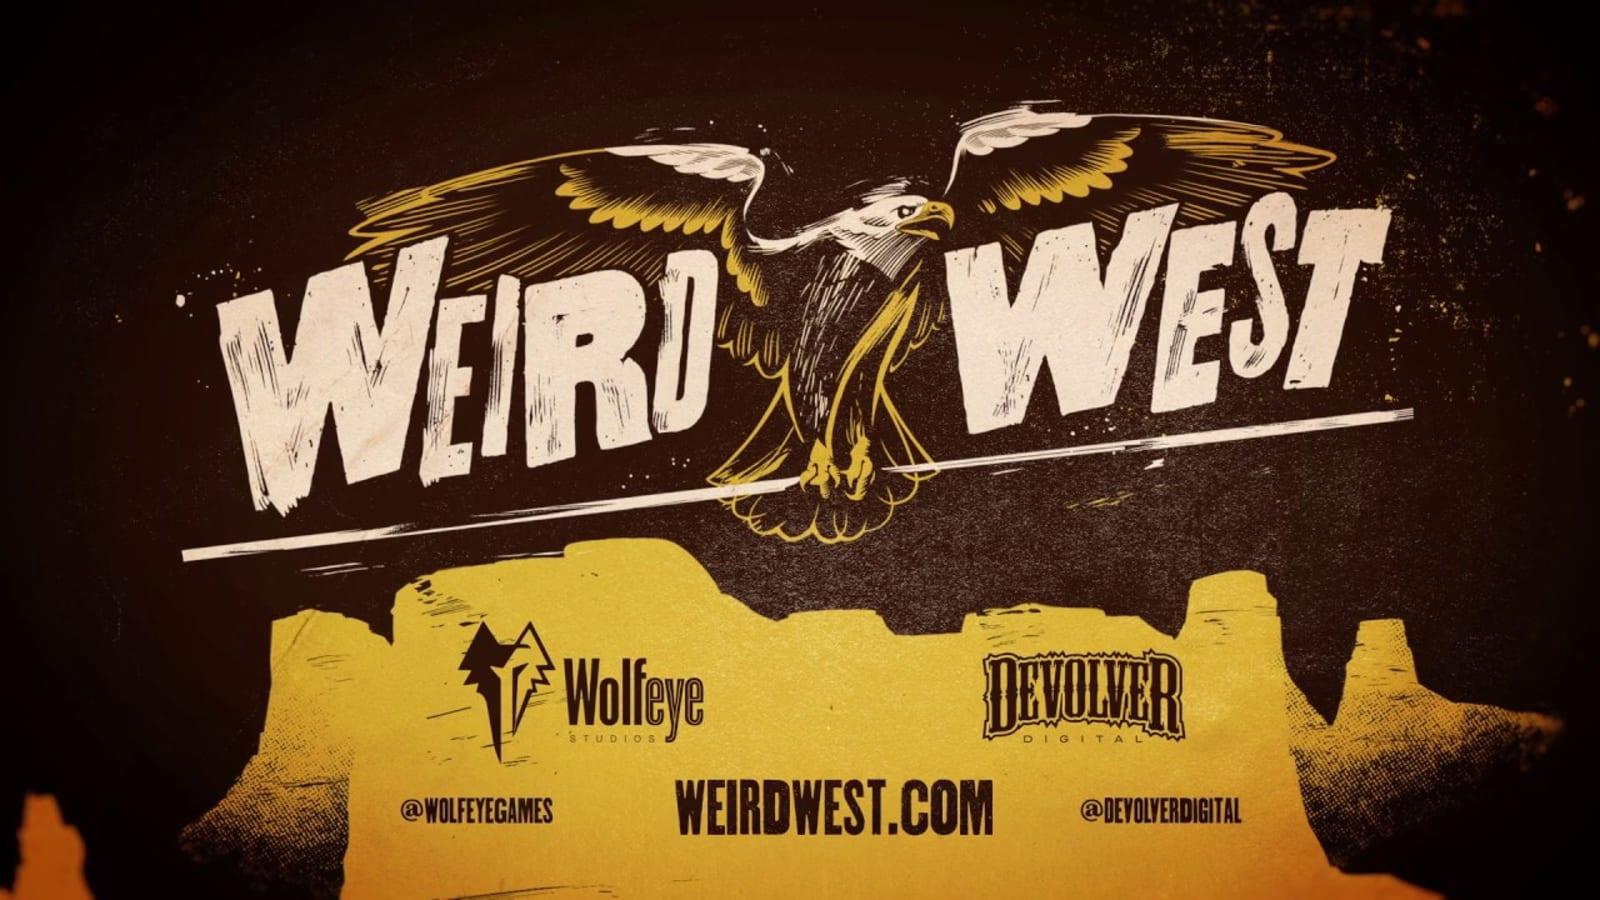 Info on Weird West from Devolver Digital